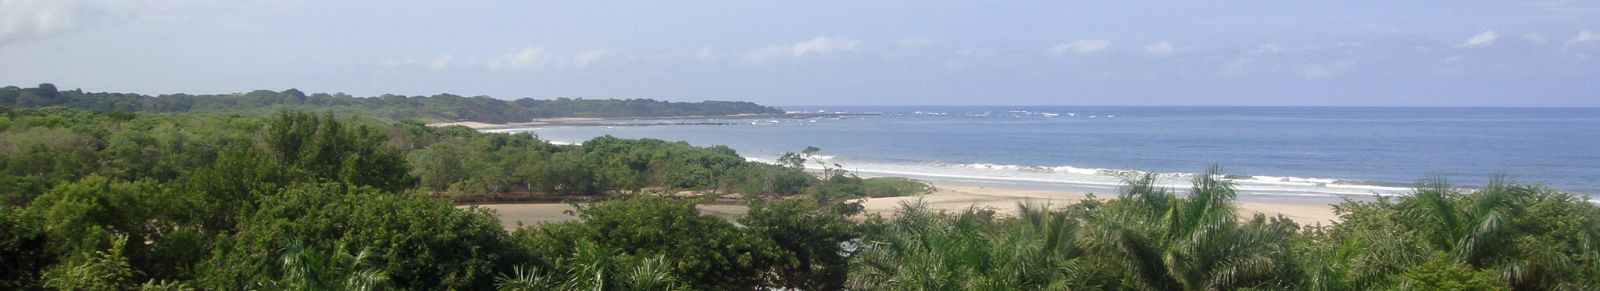 Tamarindo beach 21 top activities for active retirement